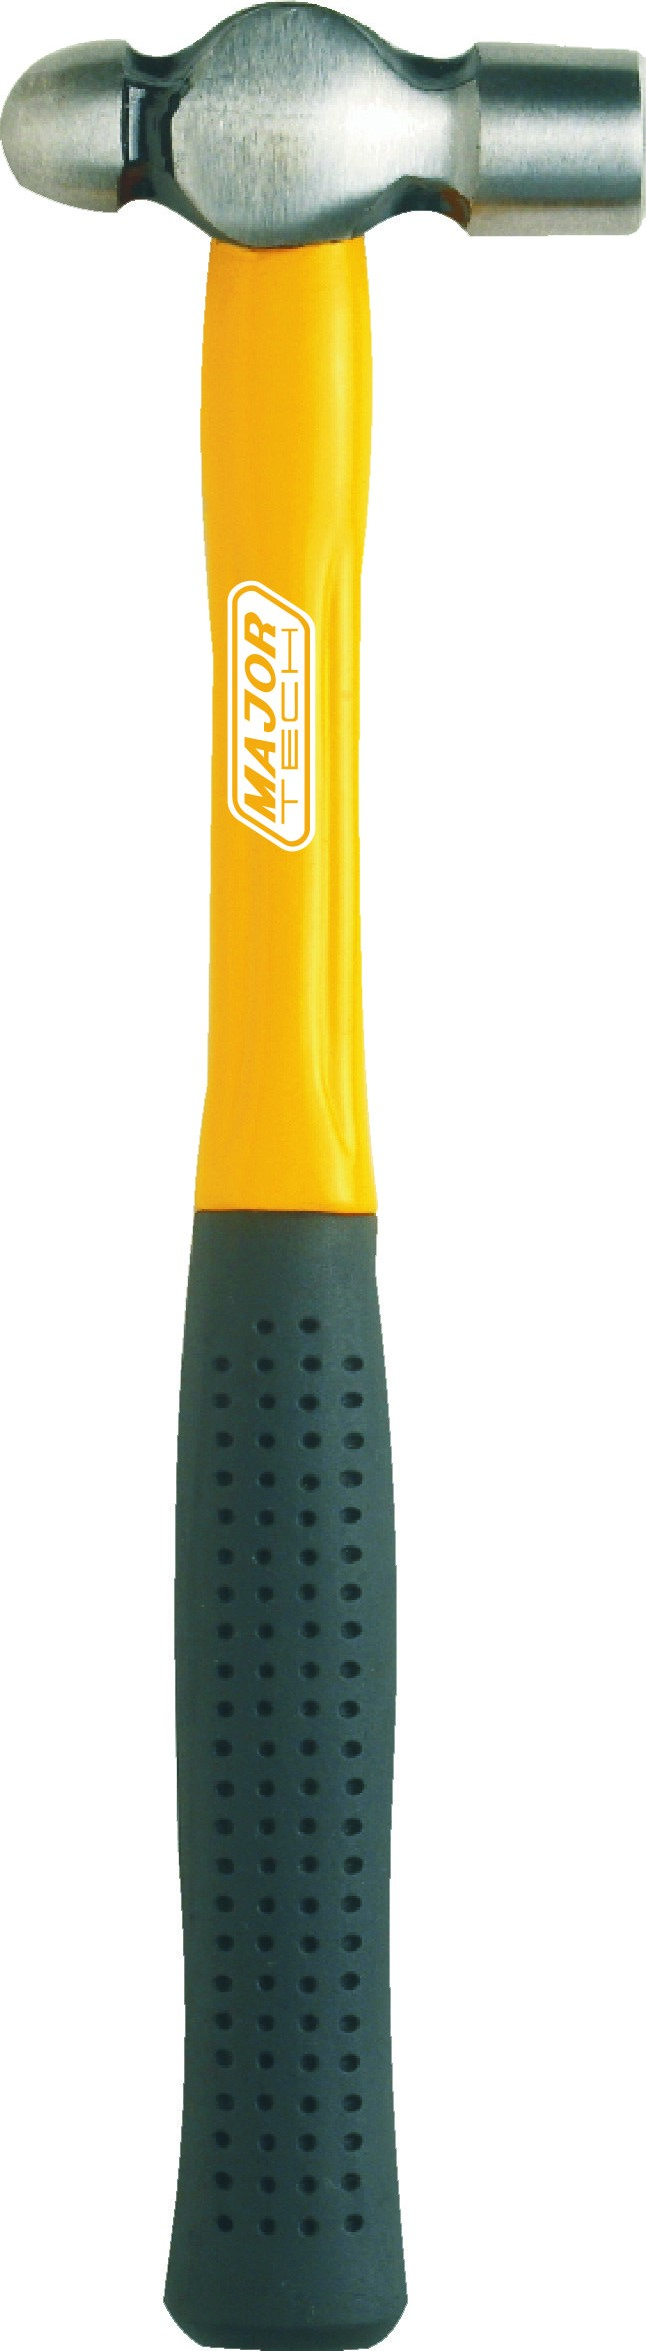 HDP0316 -450g Profess Ballpein Hammer